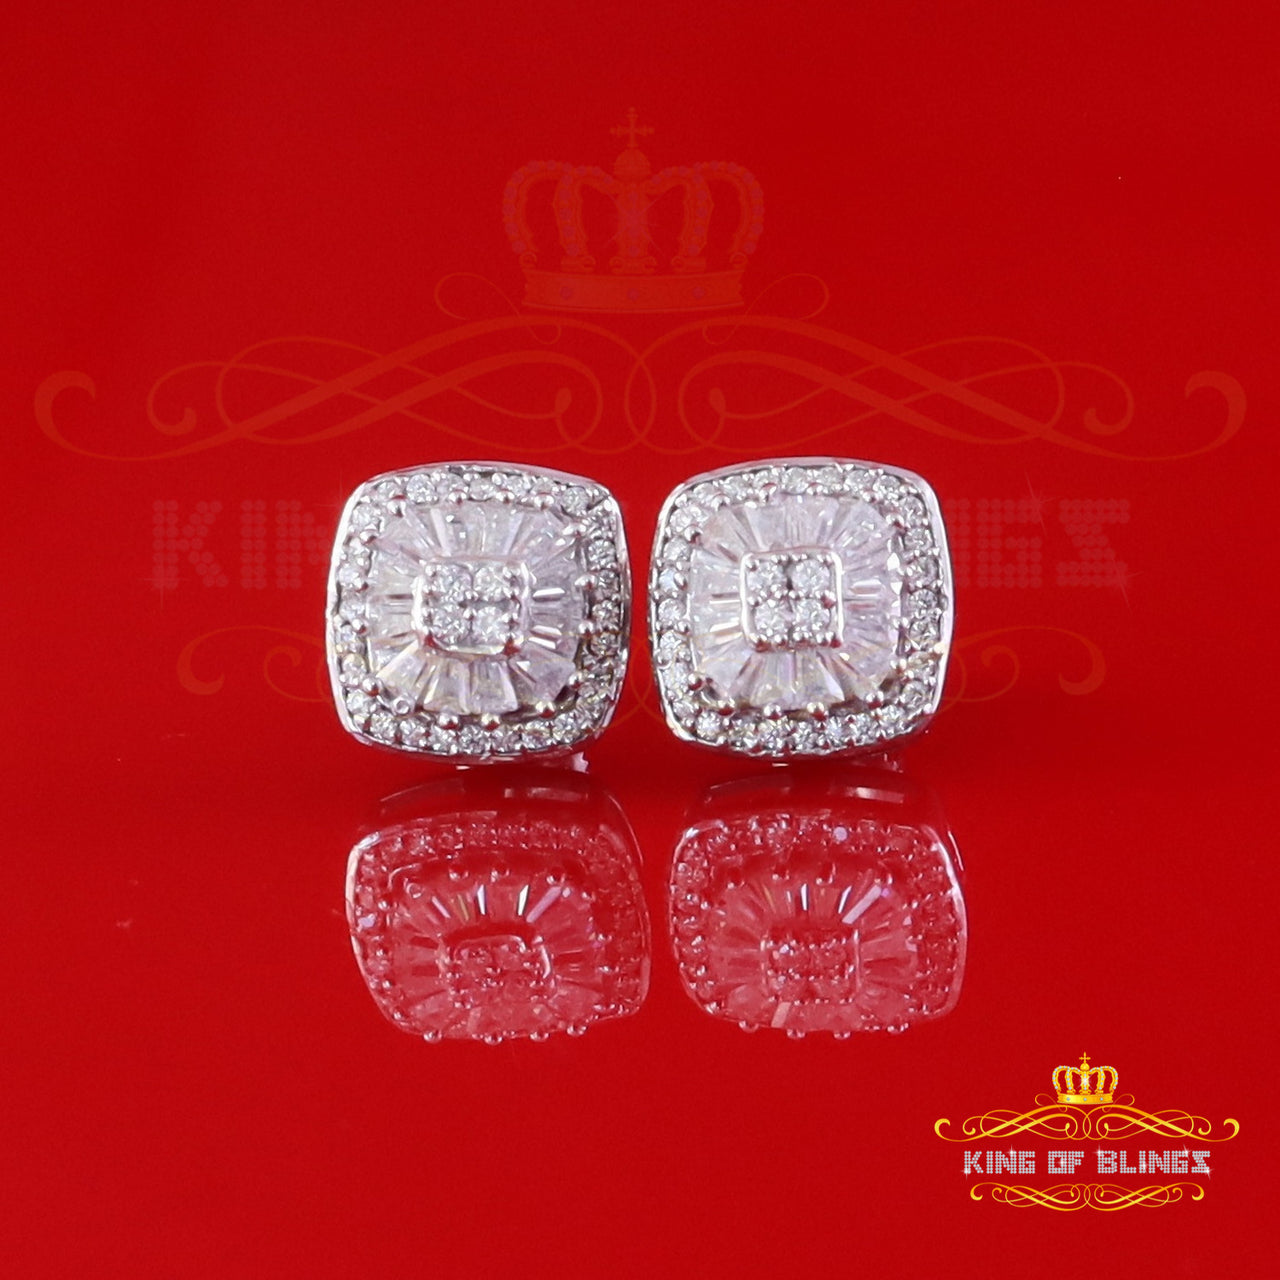 King of Bling's White Silver 1.00ct VVS 'D' Moissanite Floral Square Earring Men's/Womens King of Blings